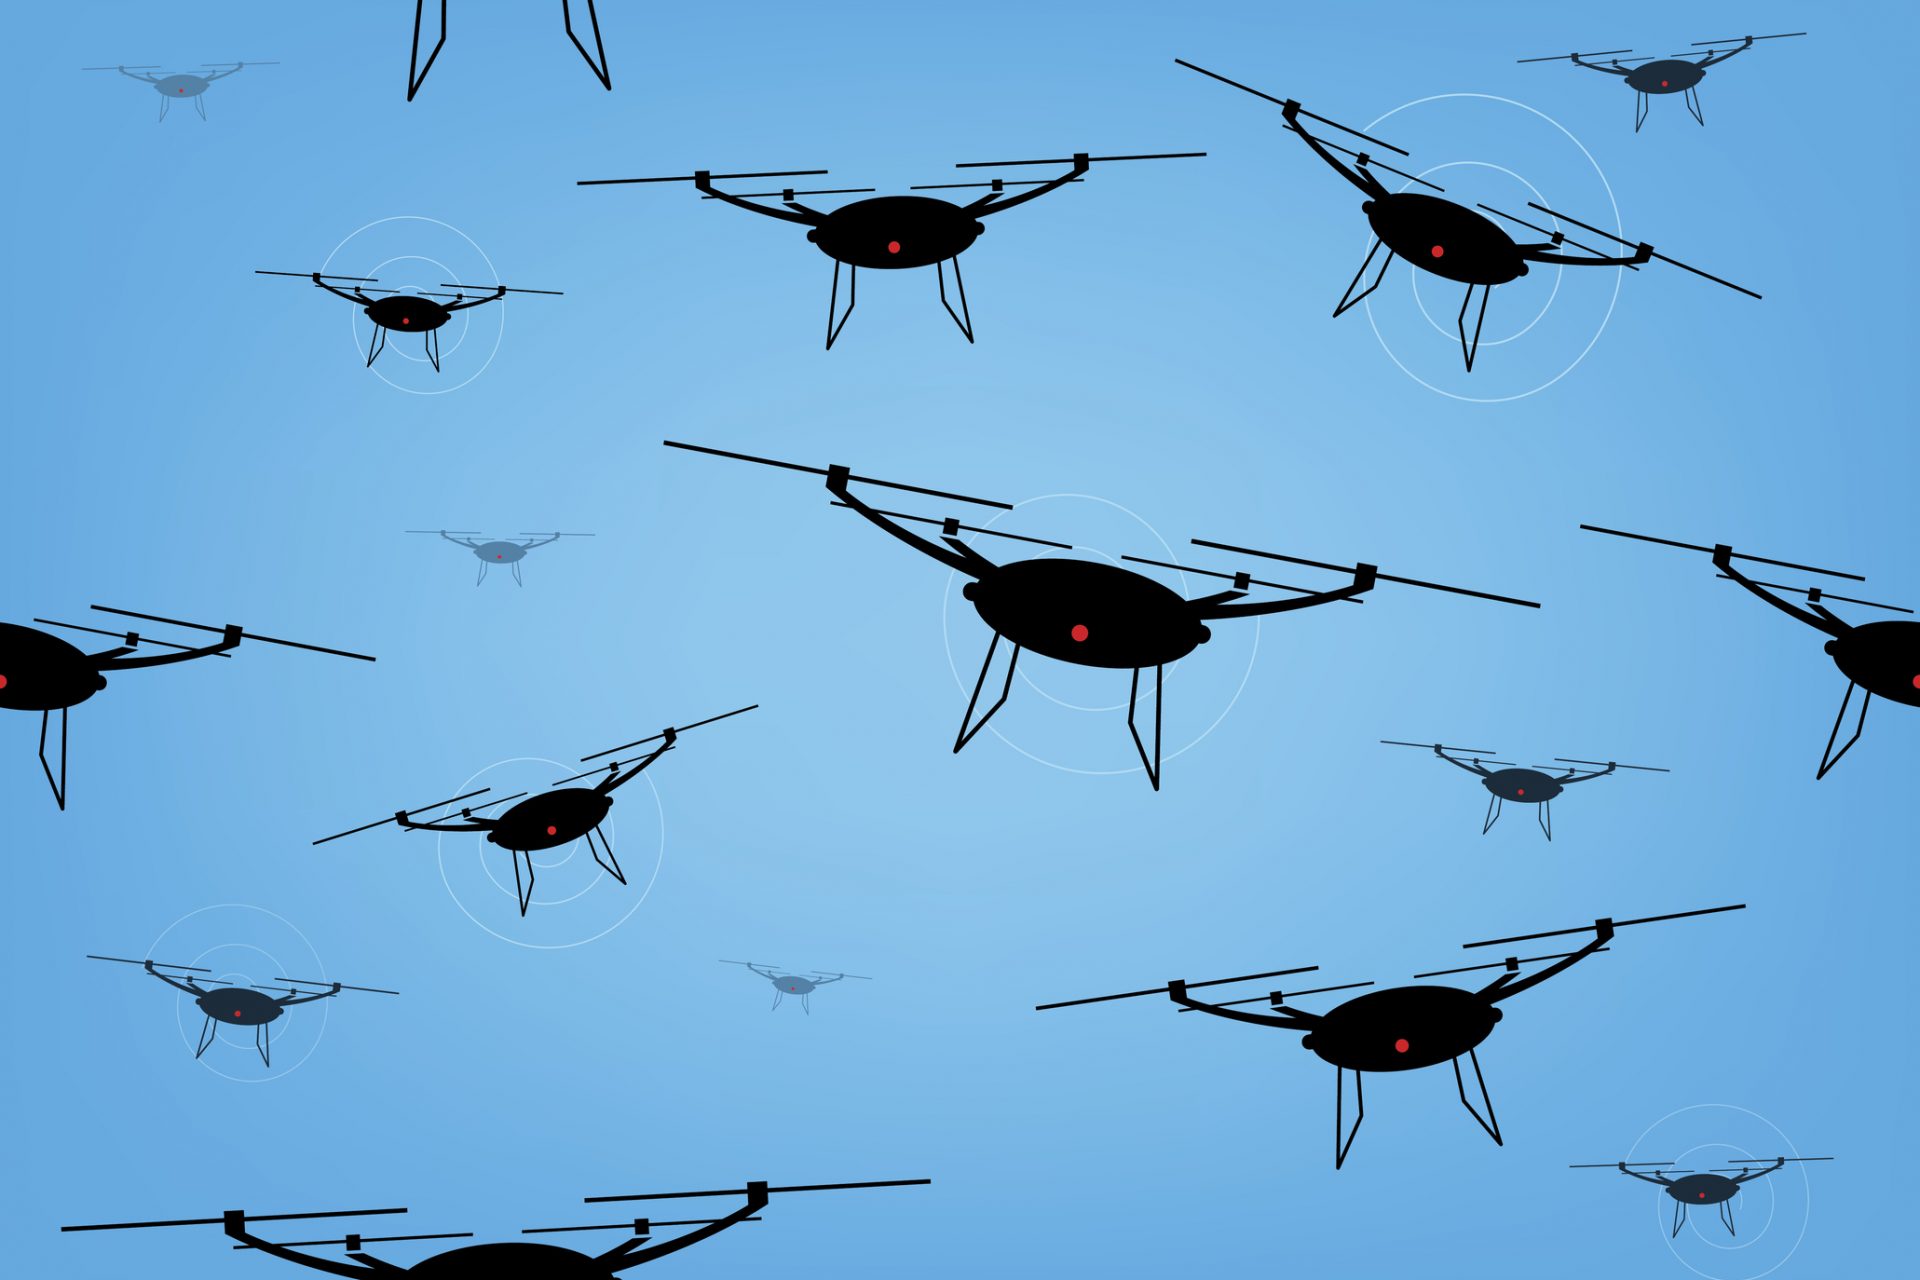 Les essaims de drones : une révolution dans la manière de faire la guerre qui pourrait changer le monde